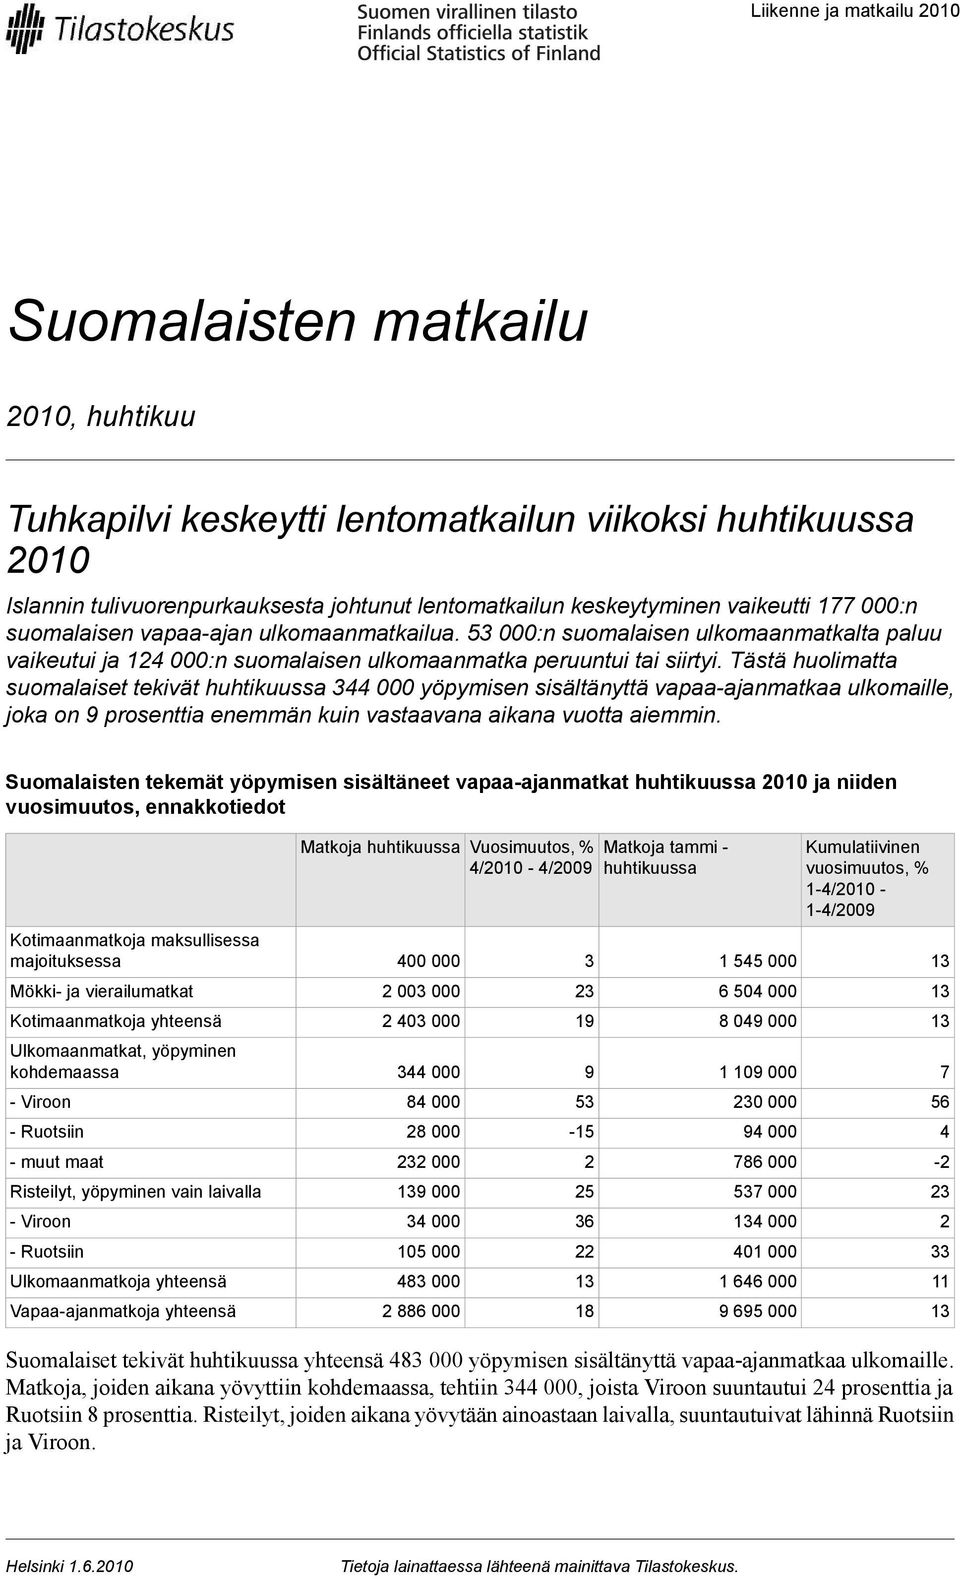 Tästä huolimatta suomalaiset tekivät huhtikuussa 344 000 yöpymisen sisältänyttä vapaa-ajanmatkaa ulkomaille, joka on 9 prosenttia enemmän kuin vastaavana aikana vuotta aiemmin.